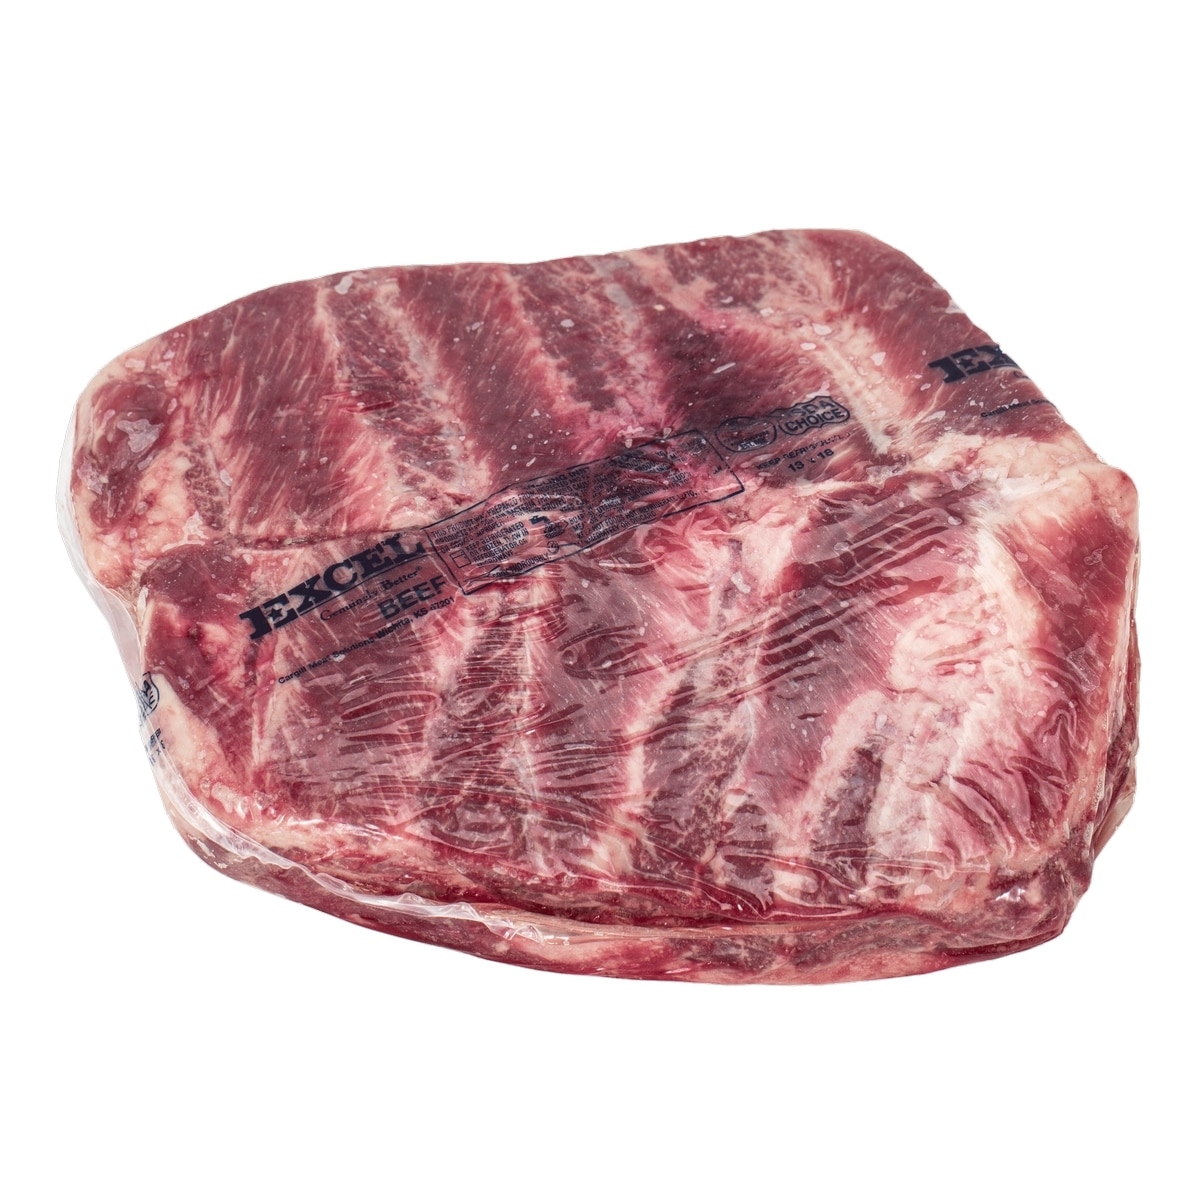 美國特選冷凍翼板肉 19公斤 / 箱